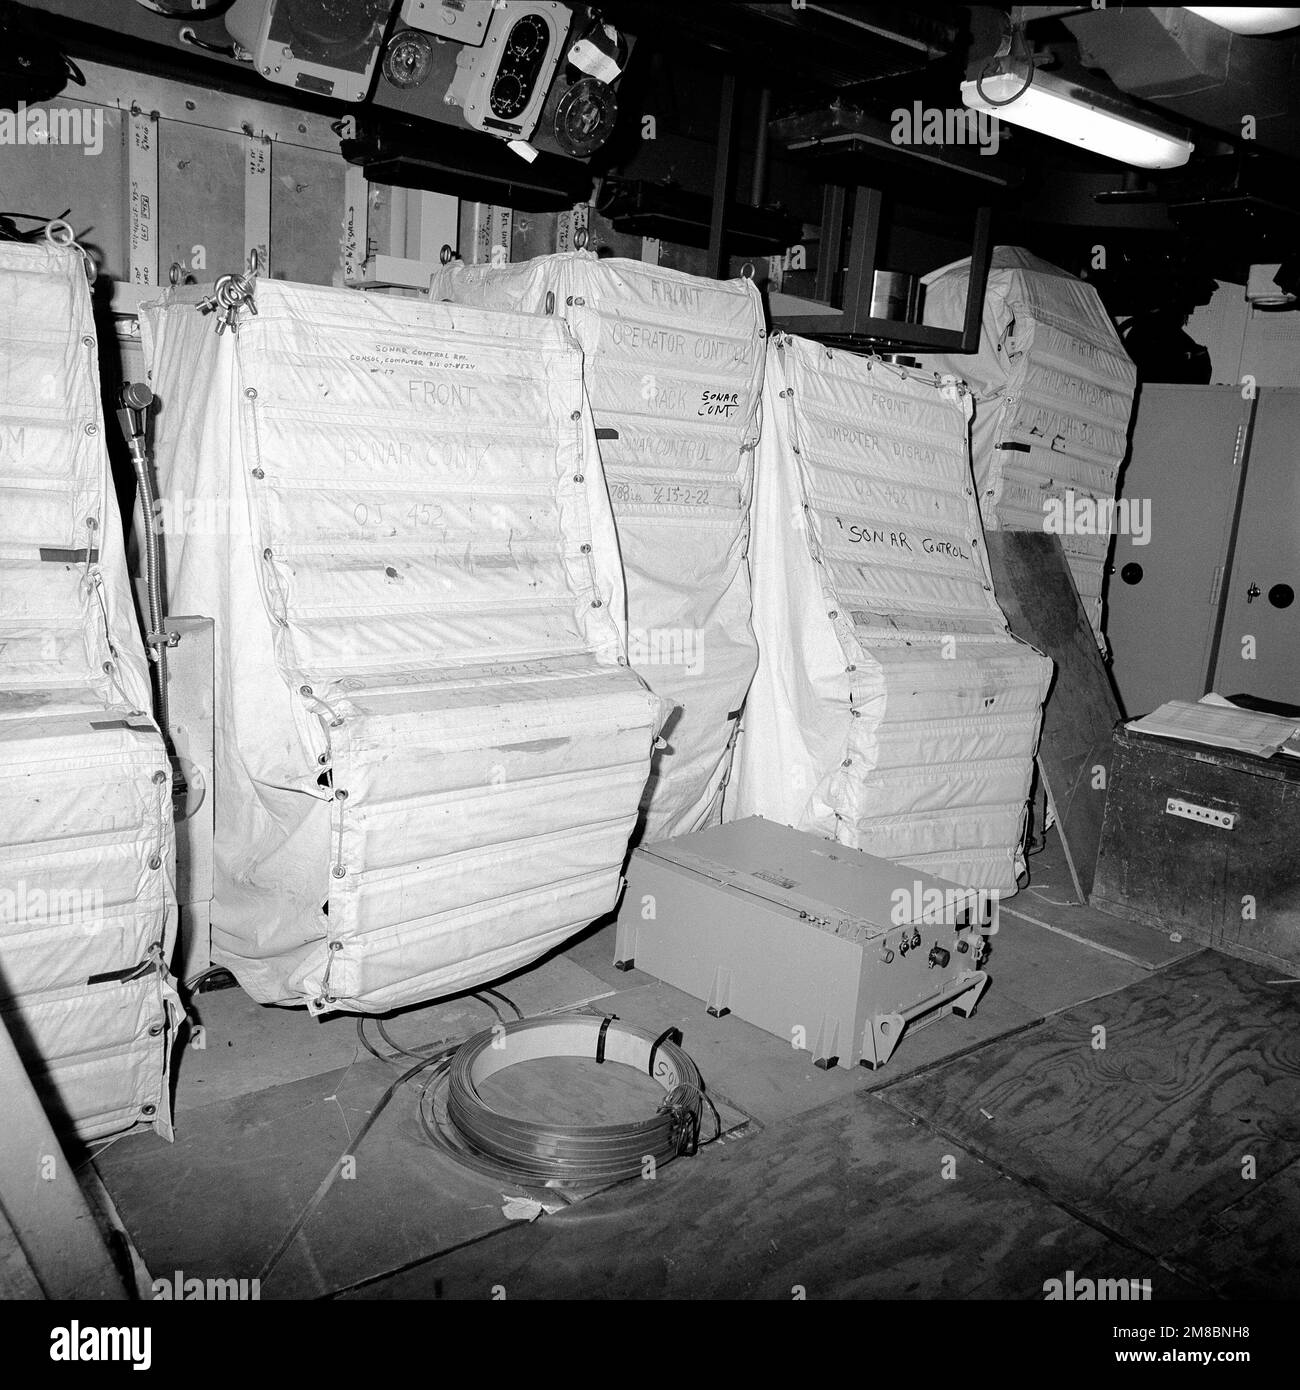 Una vista de la sala de control de sonar a bordo del crucero de misiles guiados Cowpens (CG-63). El barco está 70 por ciento completo. Base: Bath Estado: Maine (ME) País: United States of America (USA) Foto de stock